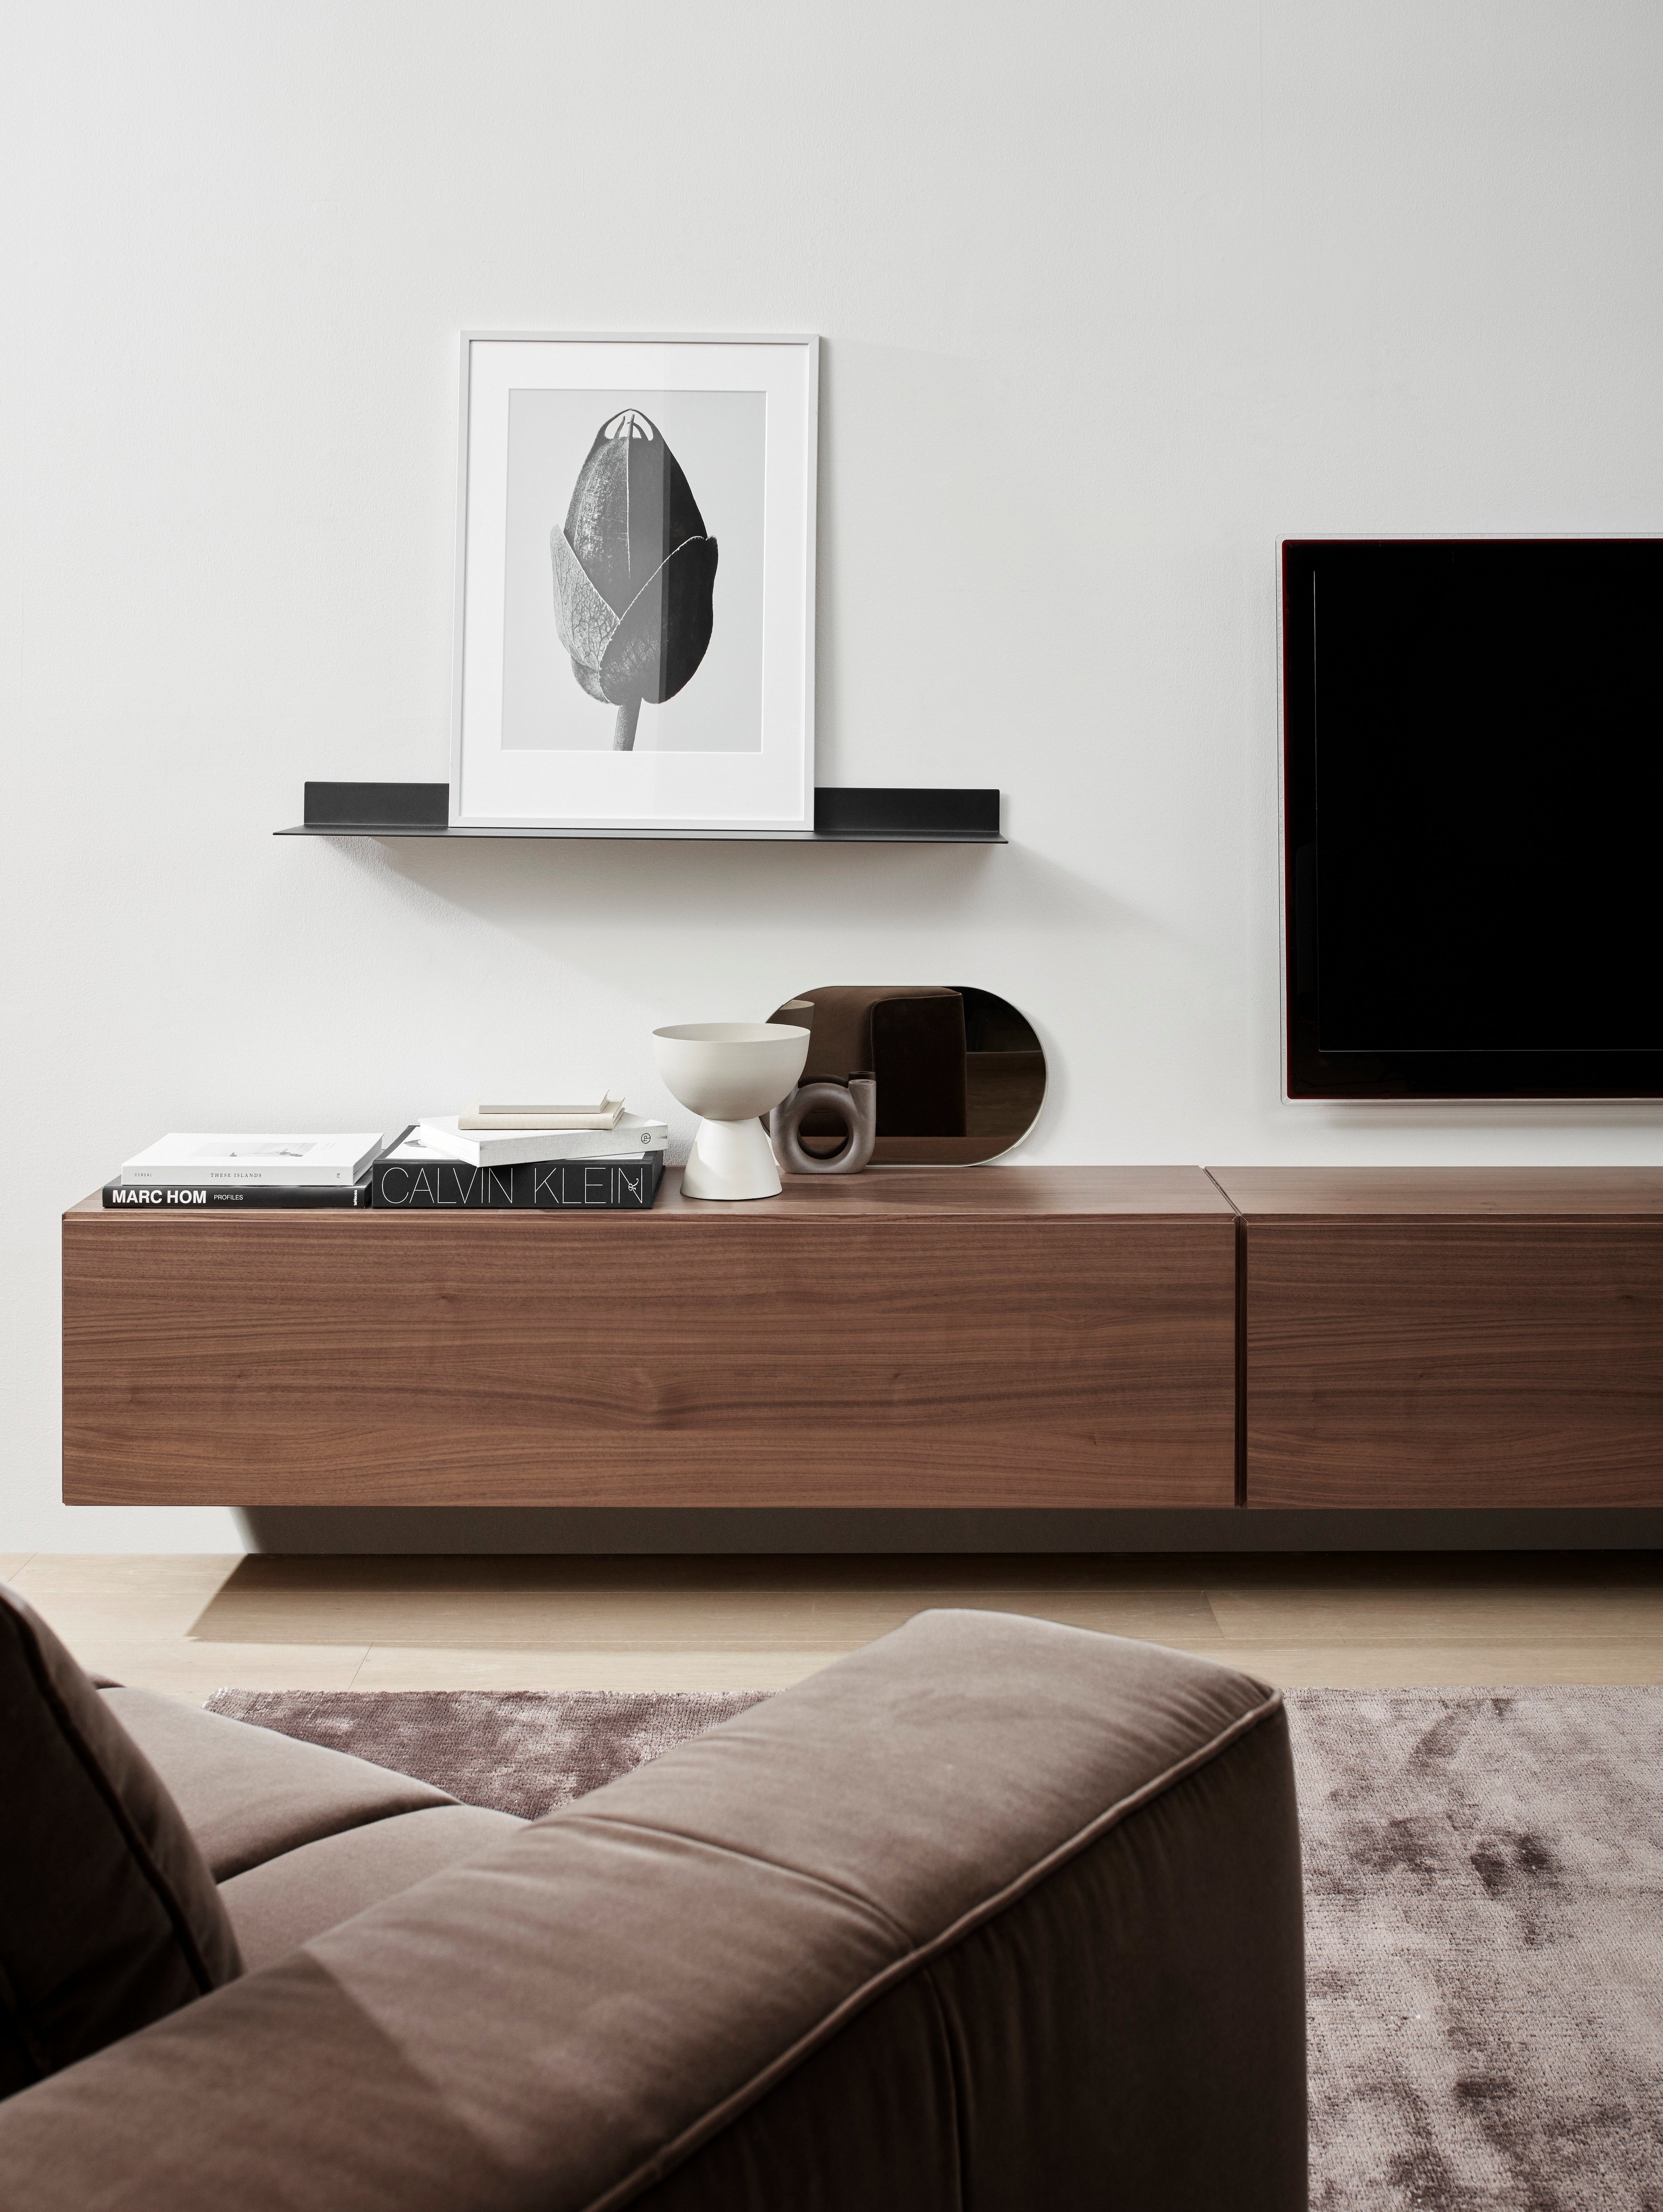 Detaljer fra moderne indrettet minimalistisk stue med brun sofa, mediemodul i træ og abstrakt kunst.